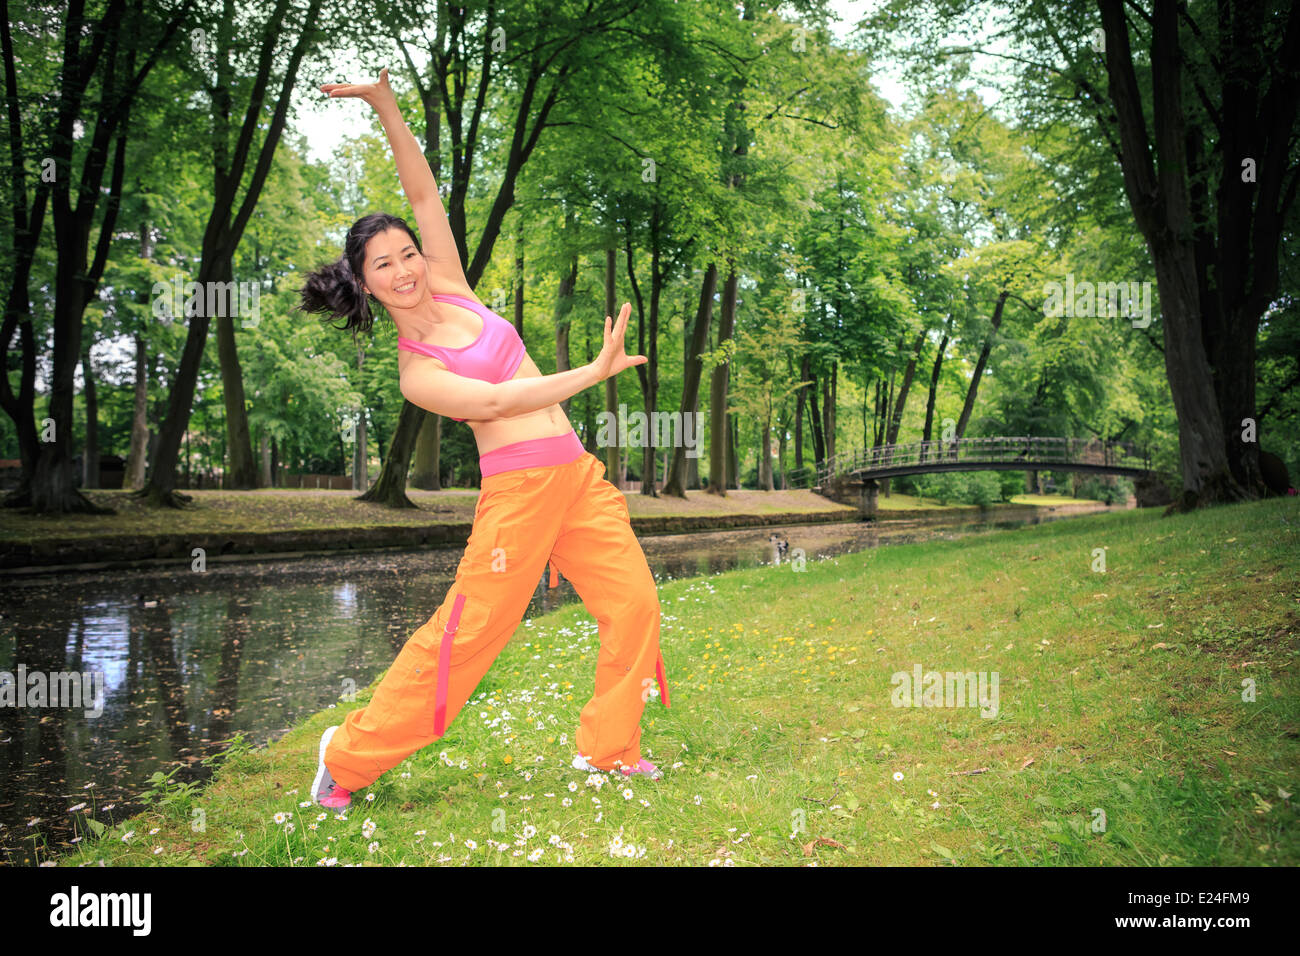 Frau tanzt Zumba oder Aerobic in einem alten park Stockfoto